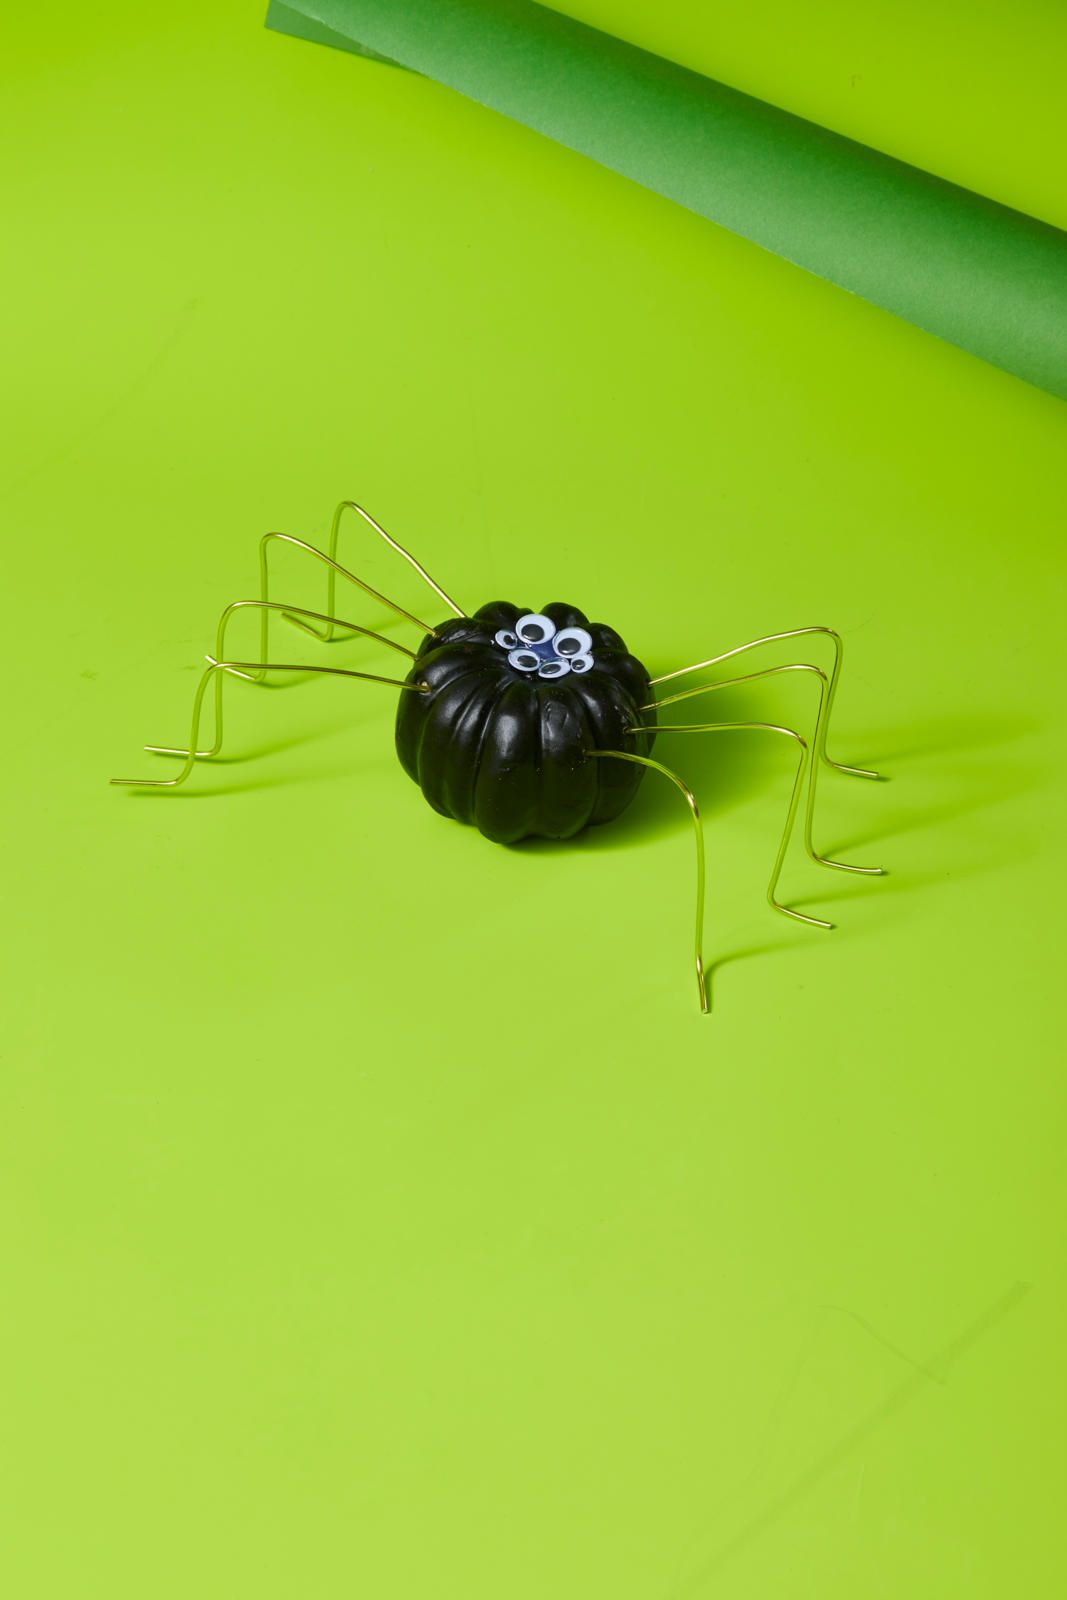 tiny plastic spiders